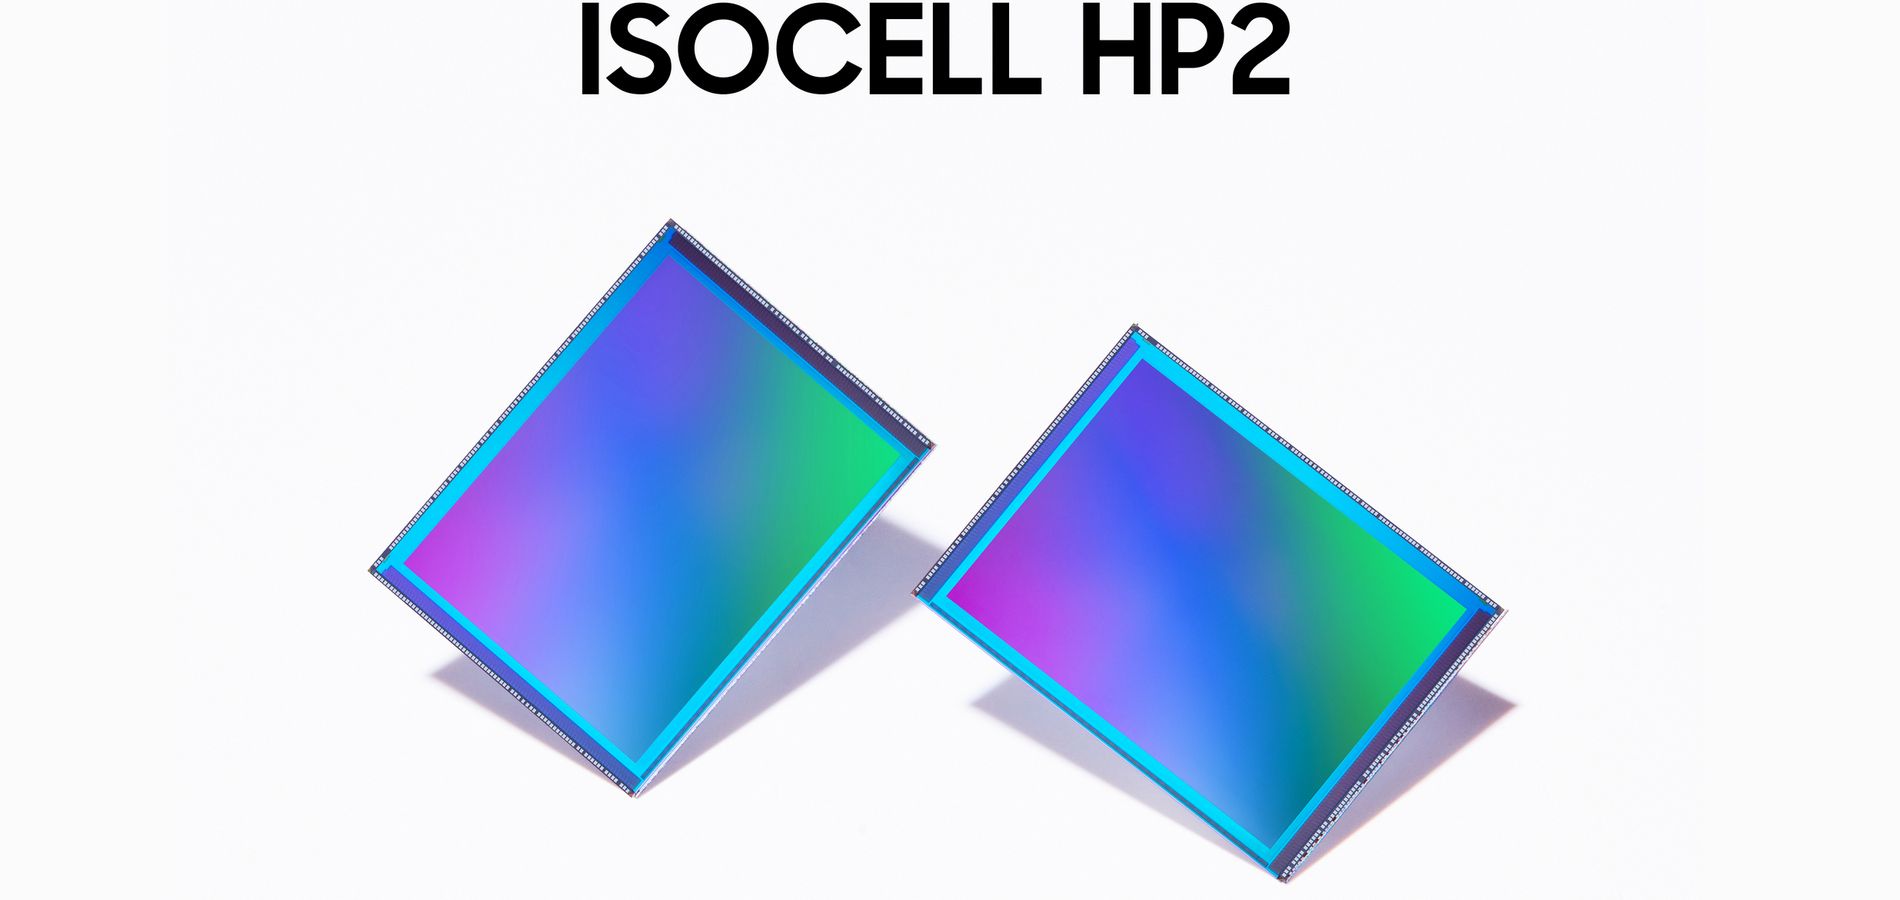 Samsung ISOCELL HP2 camera sensor 